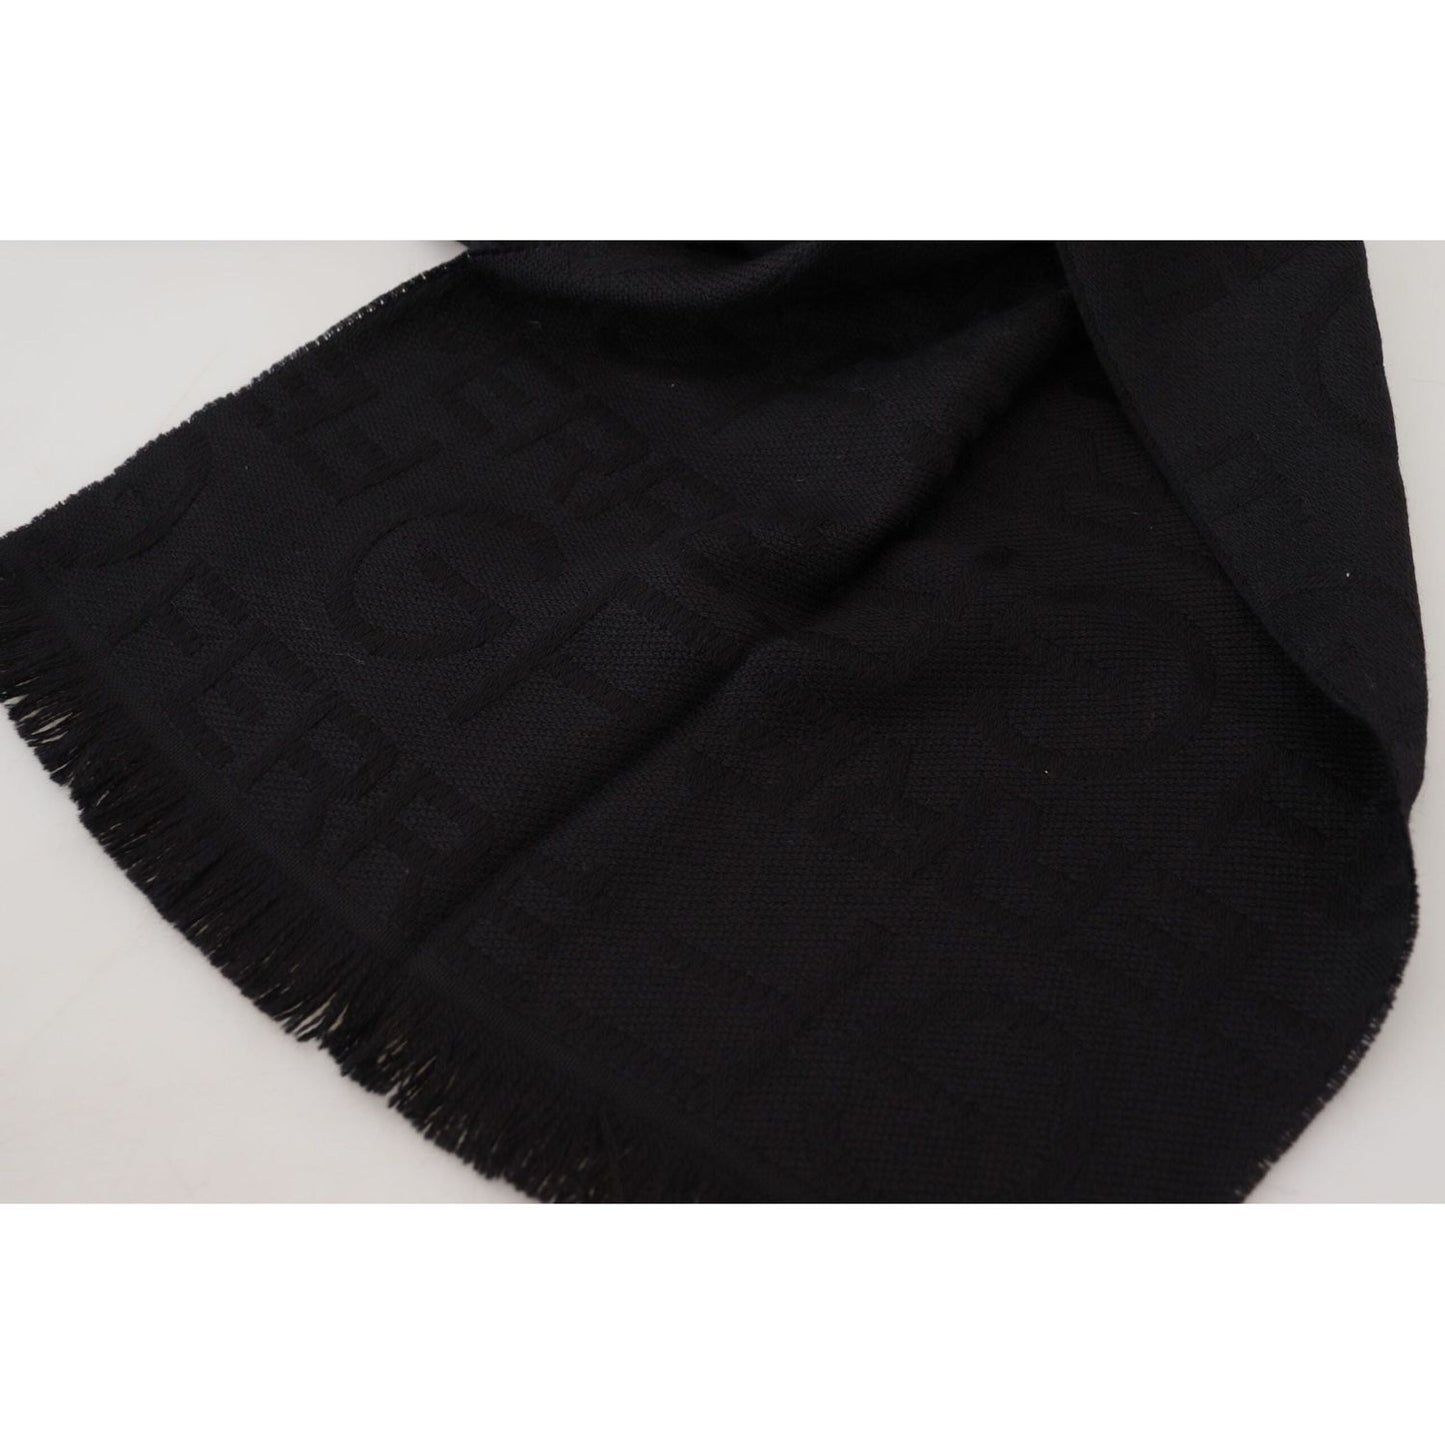 GF Ferre Elegant Wool Scarf with Fringes black-wool-neck-wrap-shawl-fringes-scarf